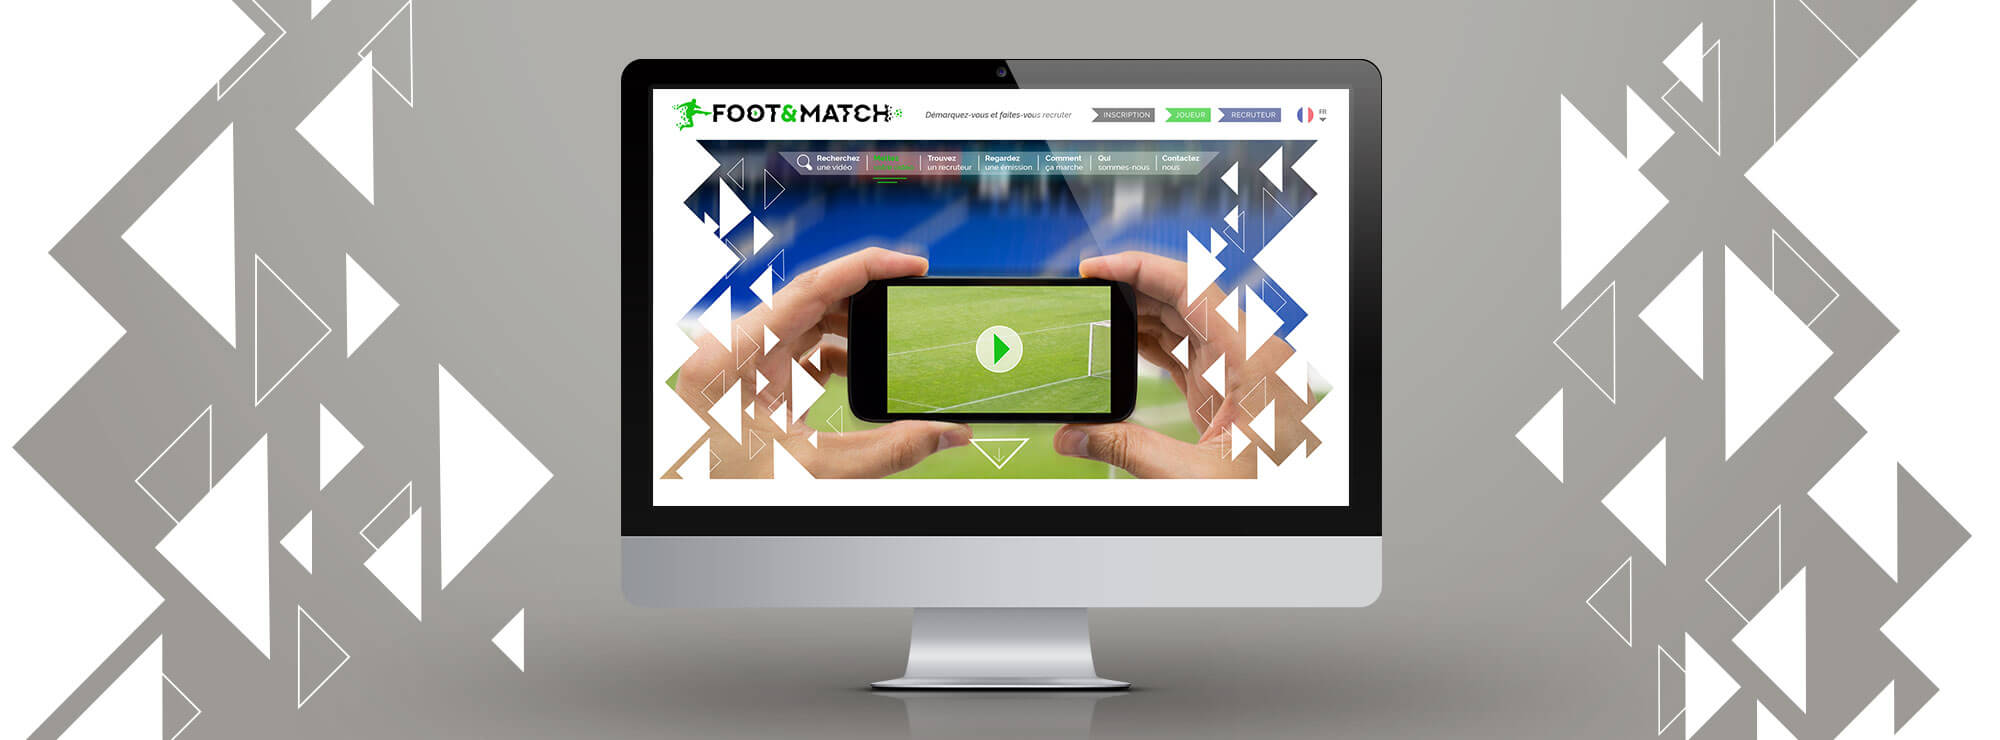 02.foot match site homepage.jpg